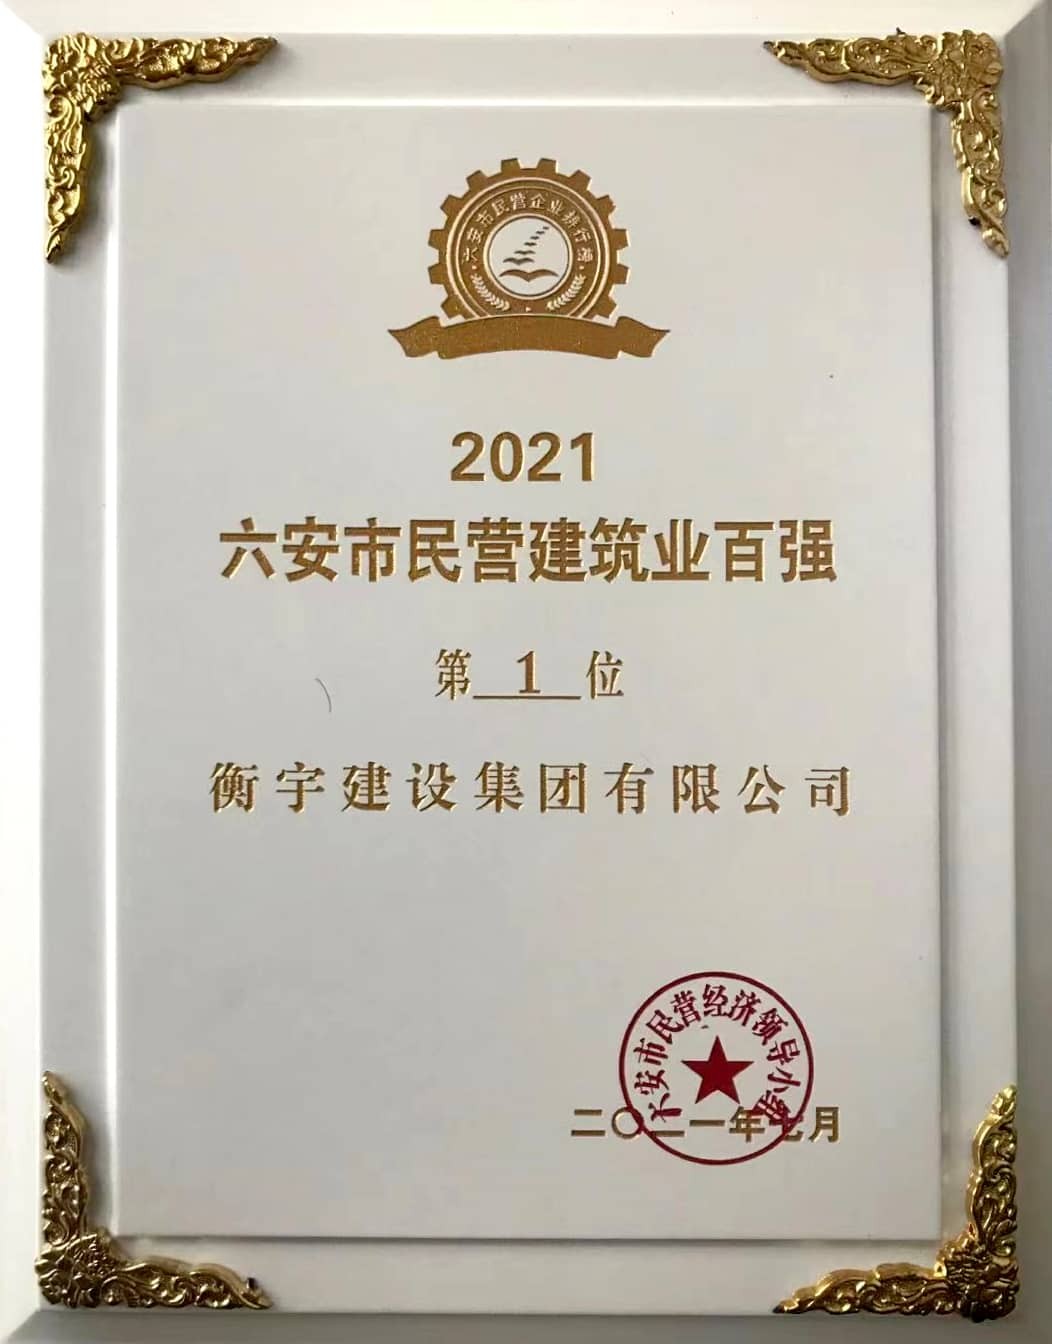 衡宇集团荣获2021年‘六安市民营建筑业百强第一’称号